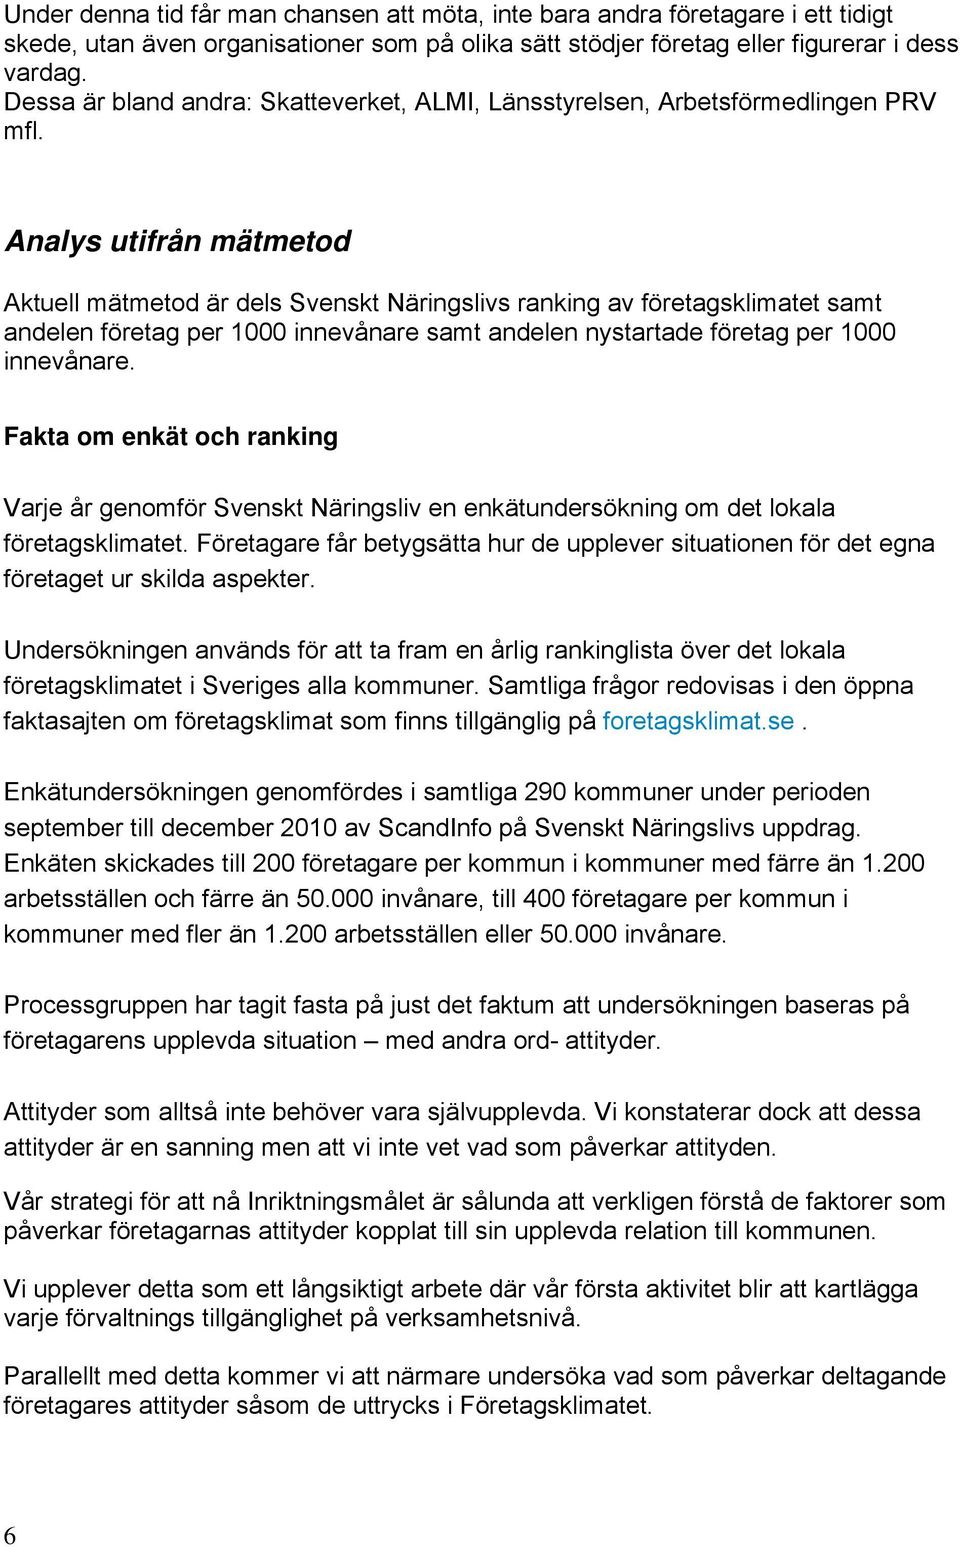 Analys utifrån mätmetod Aktuell mätmetod är dels Svenskt Näringslivs ranking av företagsklimatet samt andelen företag per 1000 innevånare samt andelen nystartade företag per 1000 innevånare.